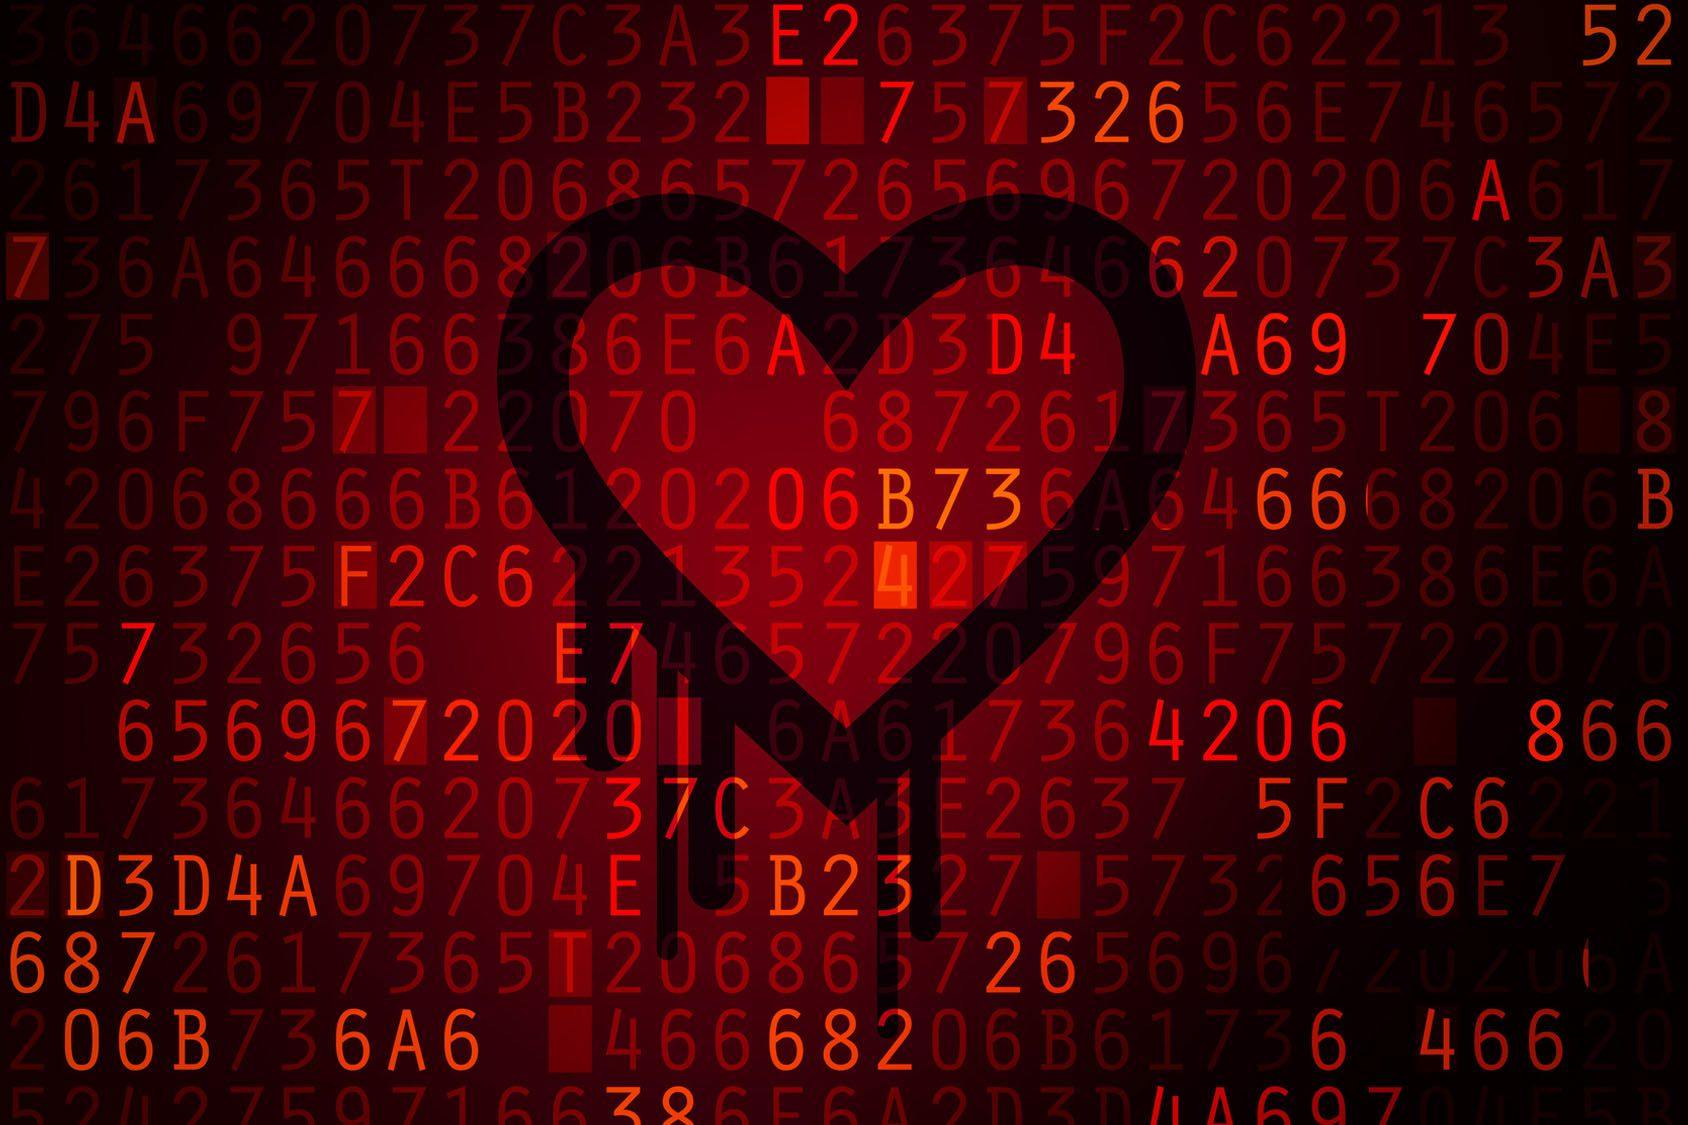 La vulnerabilità Heartbleed (CVE-2014-0160) spiegata in poche parole